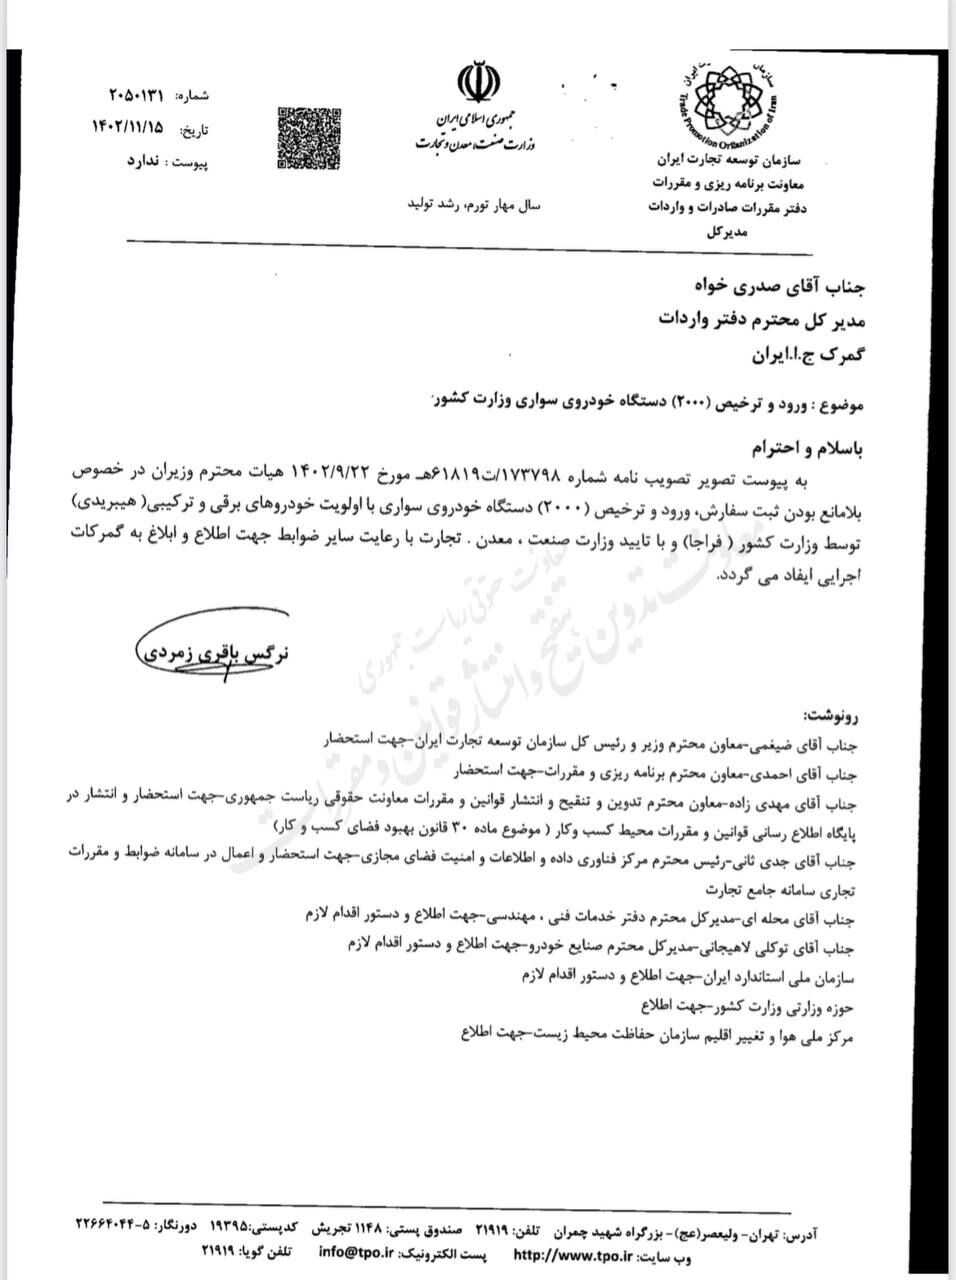 مجوز واردات خودرو به وزارت کشور اعطا شد